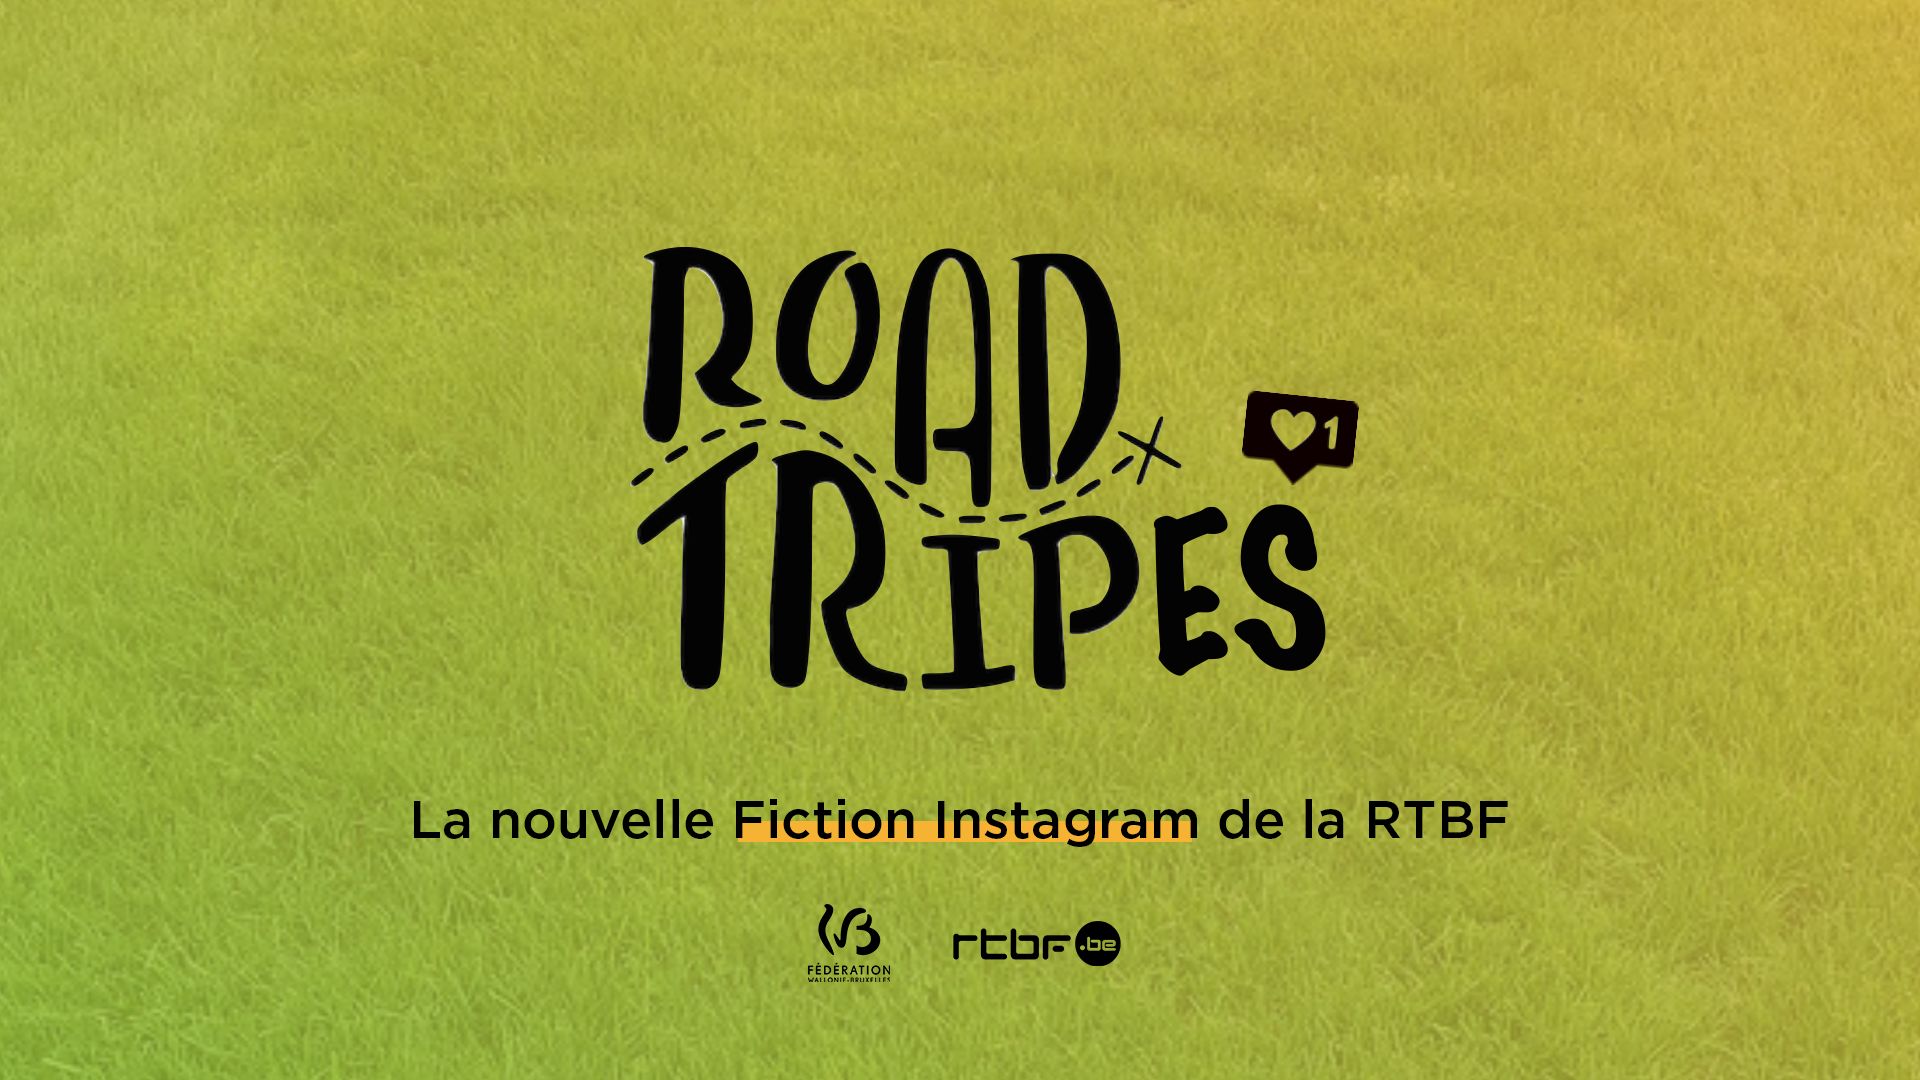 ROAD-TRIPES est la nouvelle Fiction Instagram de la RTBF